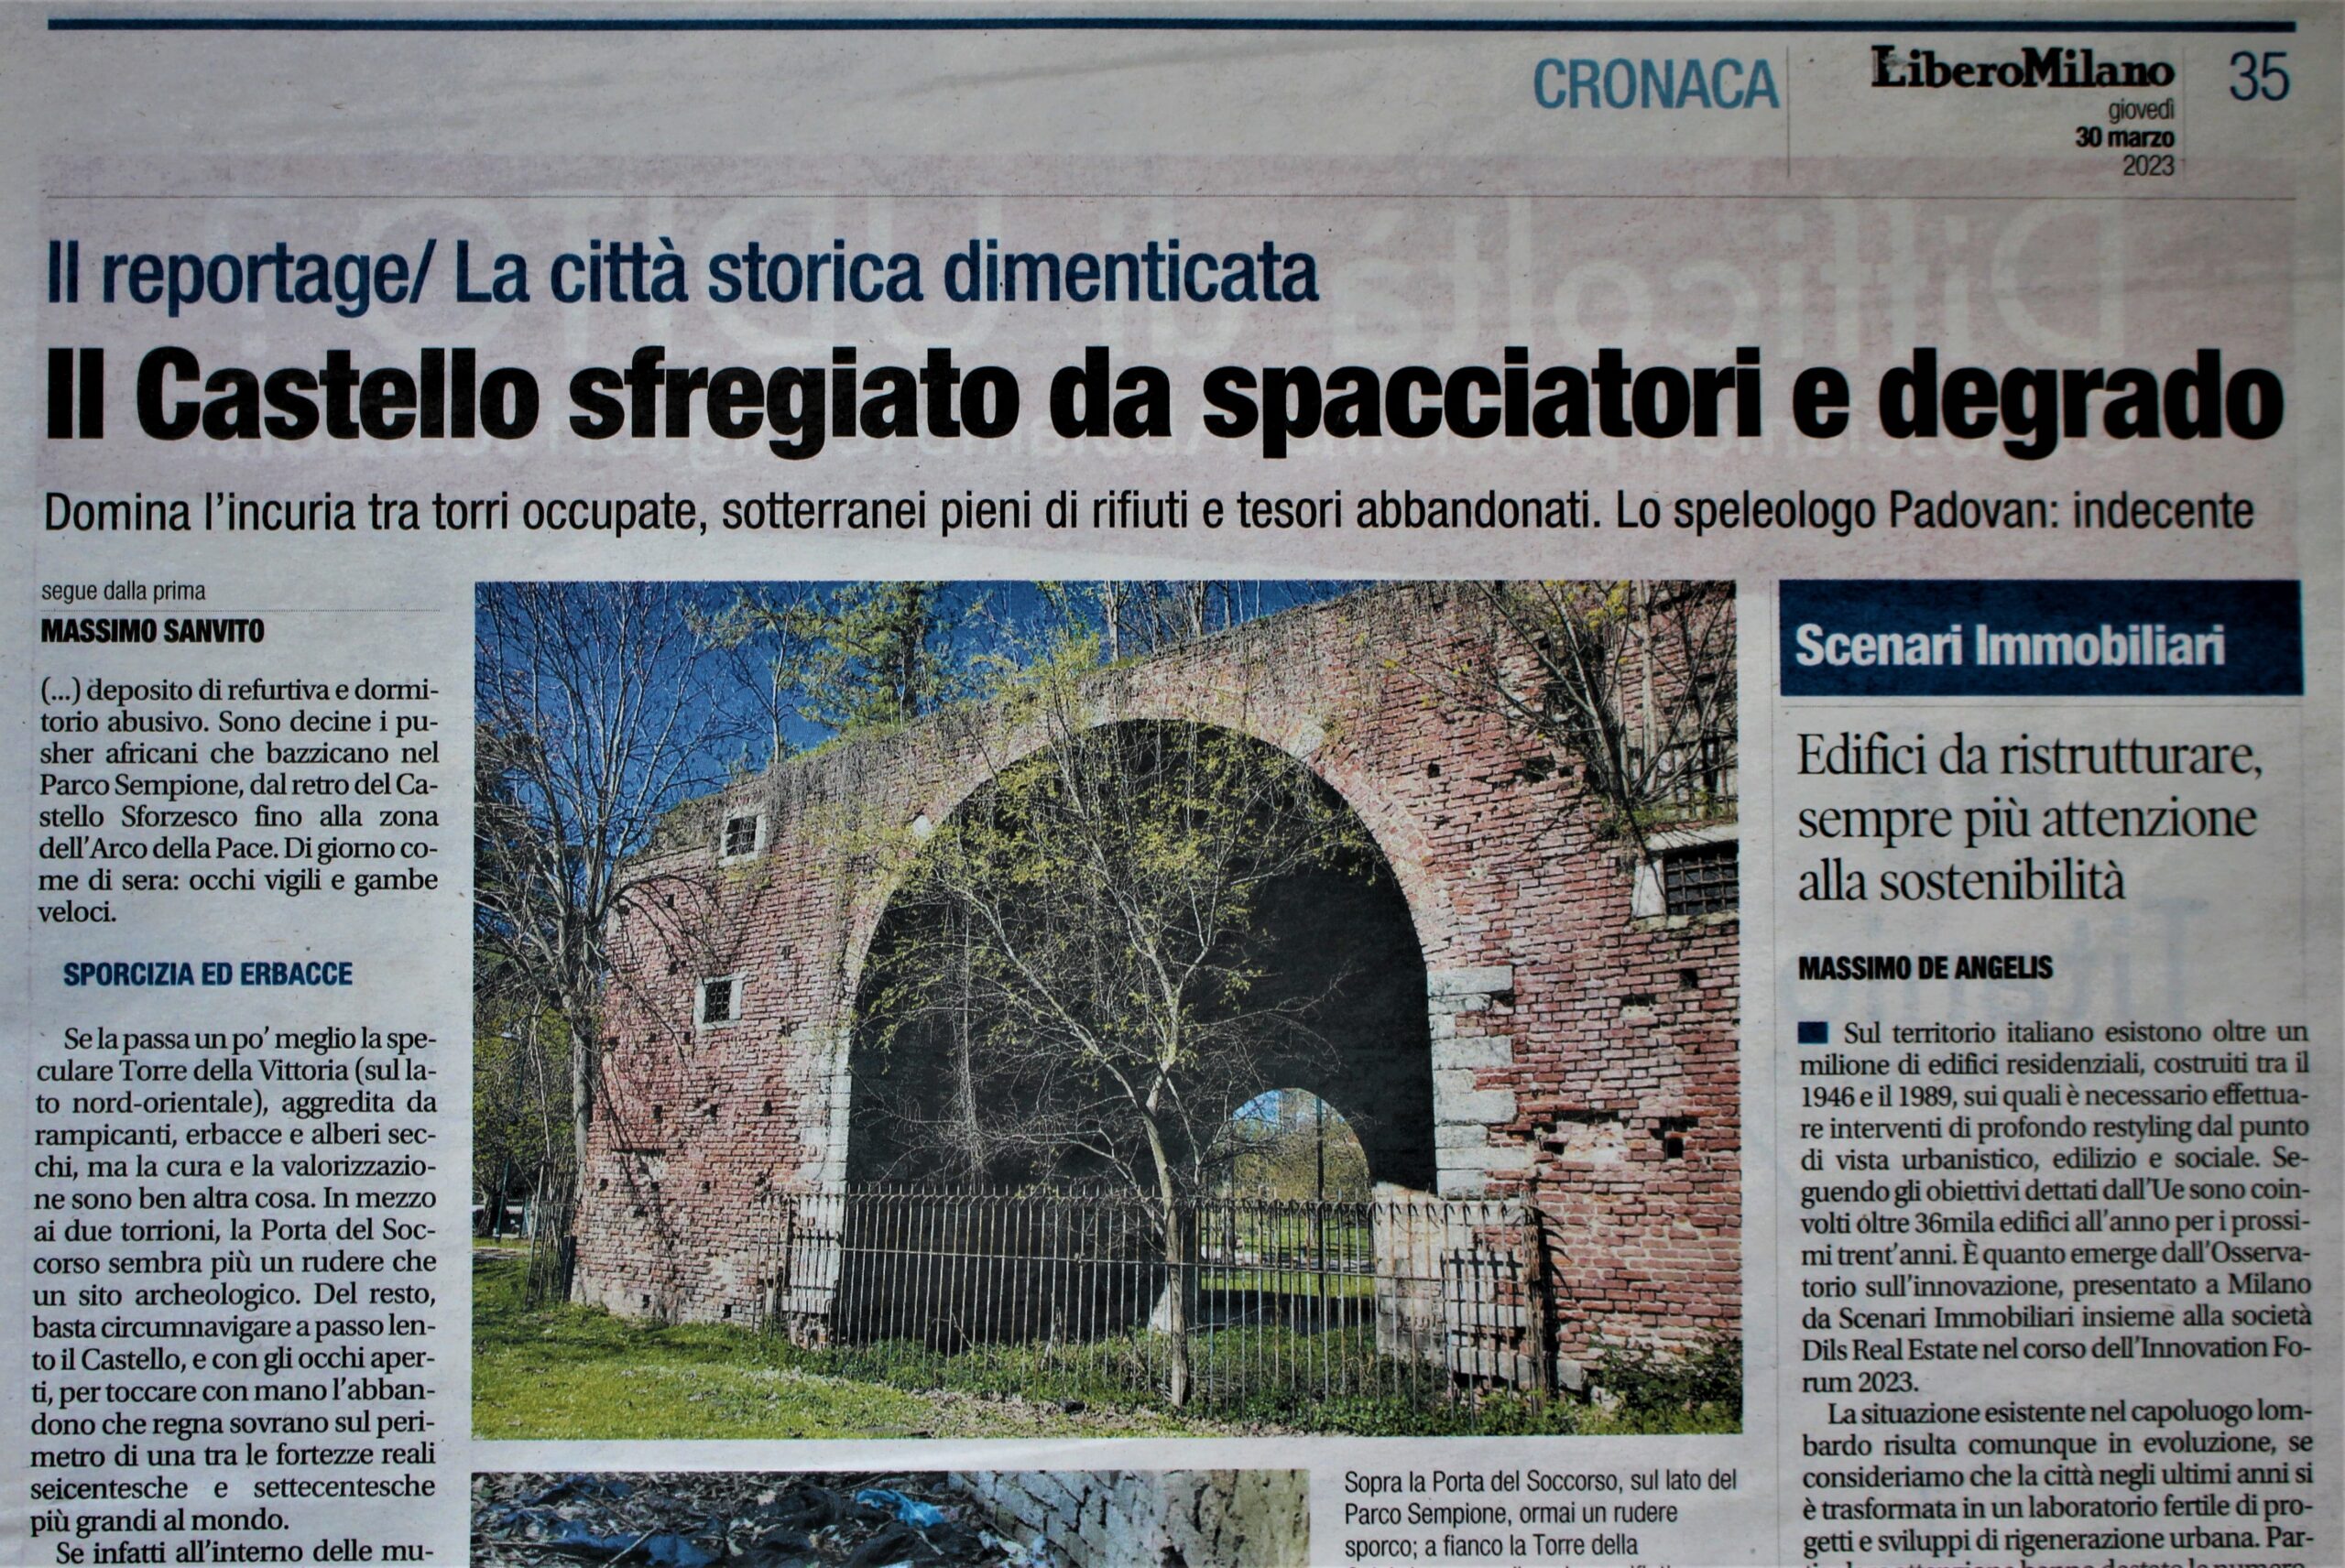 Seconda parte dell'articolo sul degrado inaccettabile al Castello di Milano